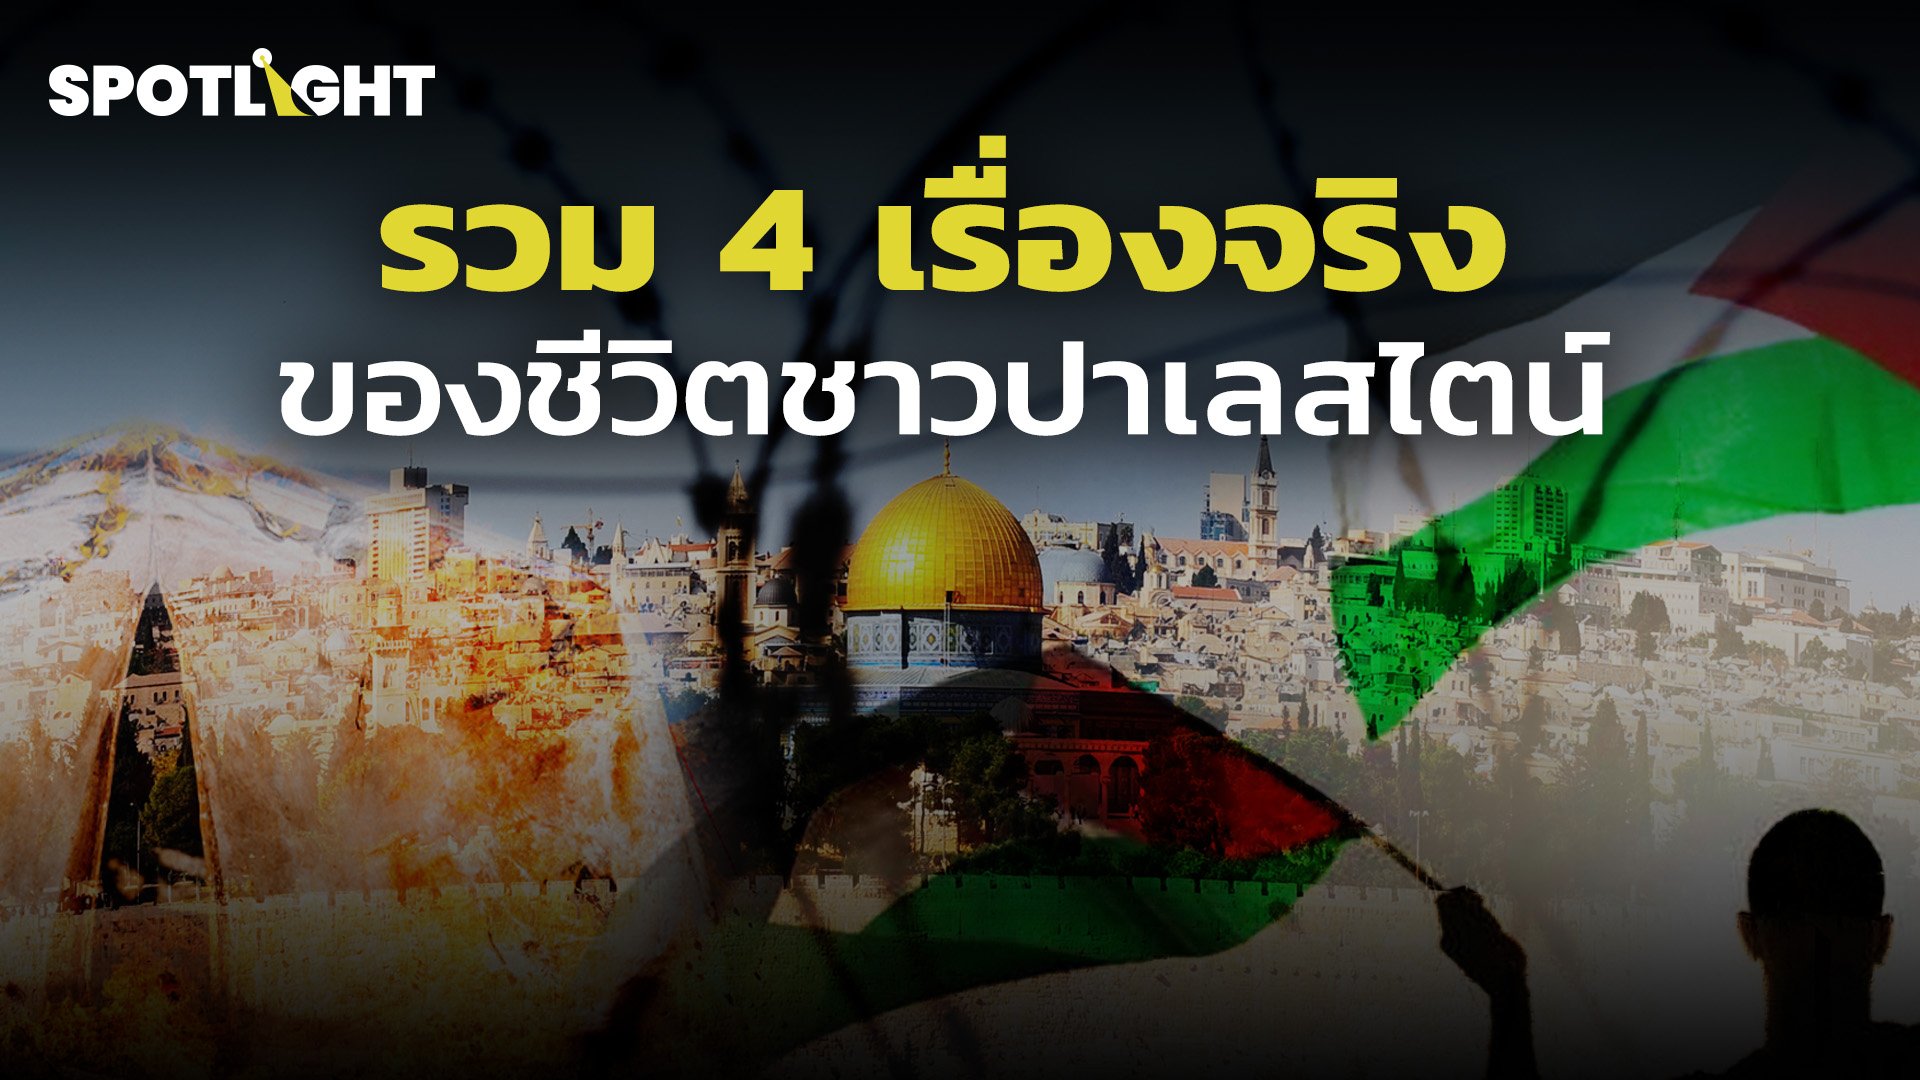 รวม 4 เรื่องจริง ของชีวิตชาวปาเลสไตน์ | Spotlight | 25 ต.ค. 66 | AMARIN TVHD34